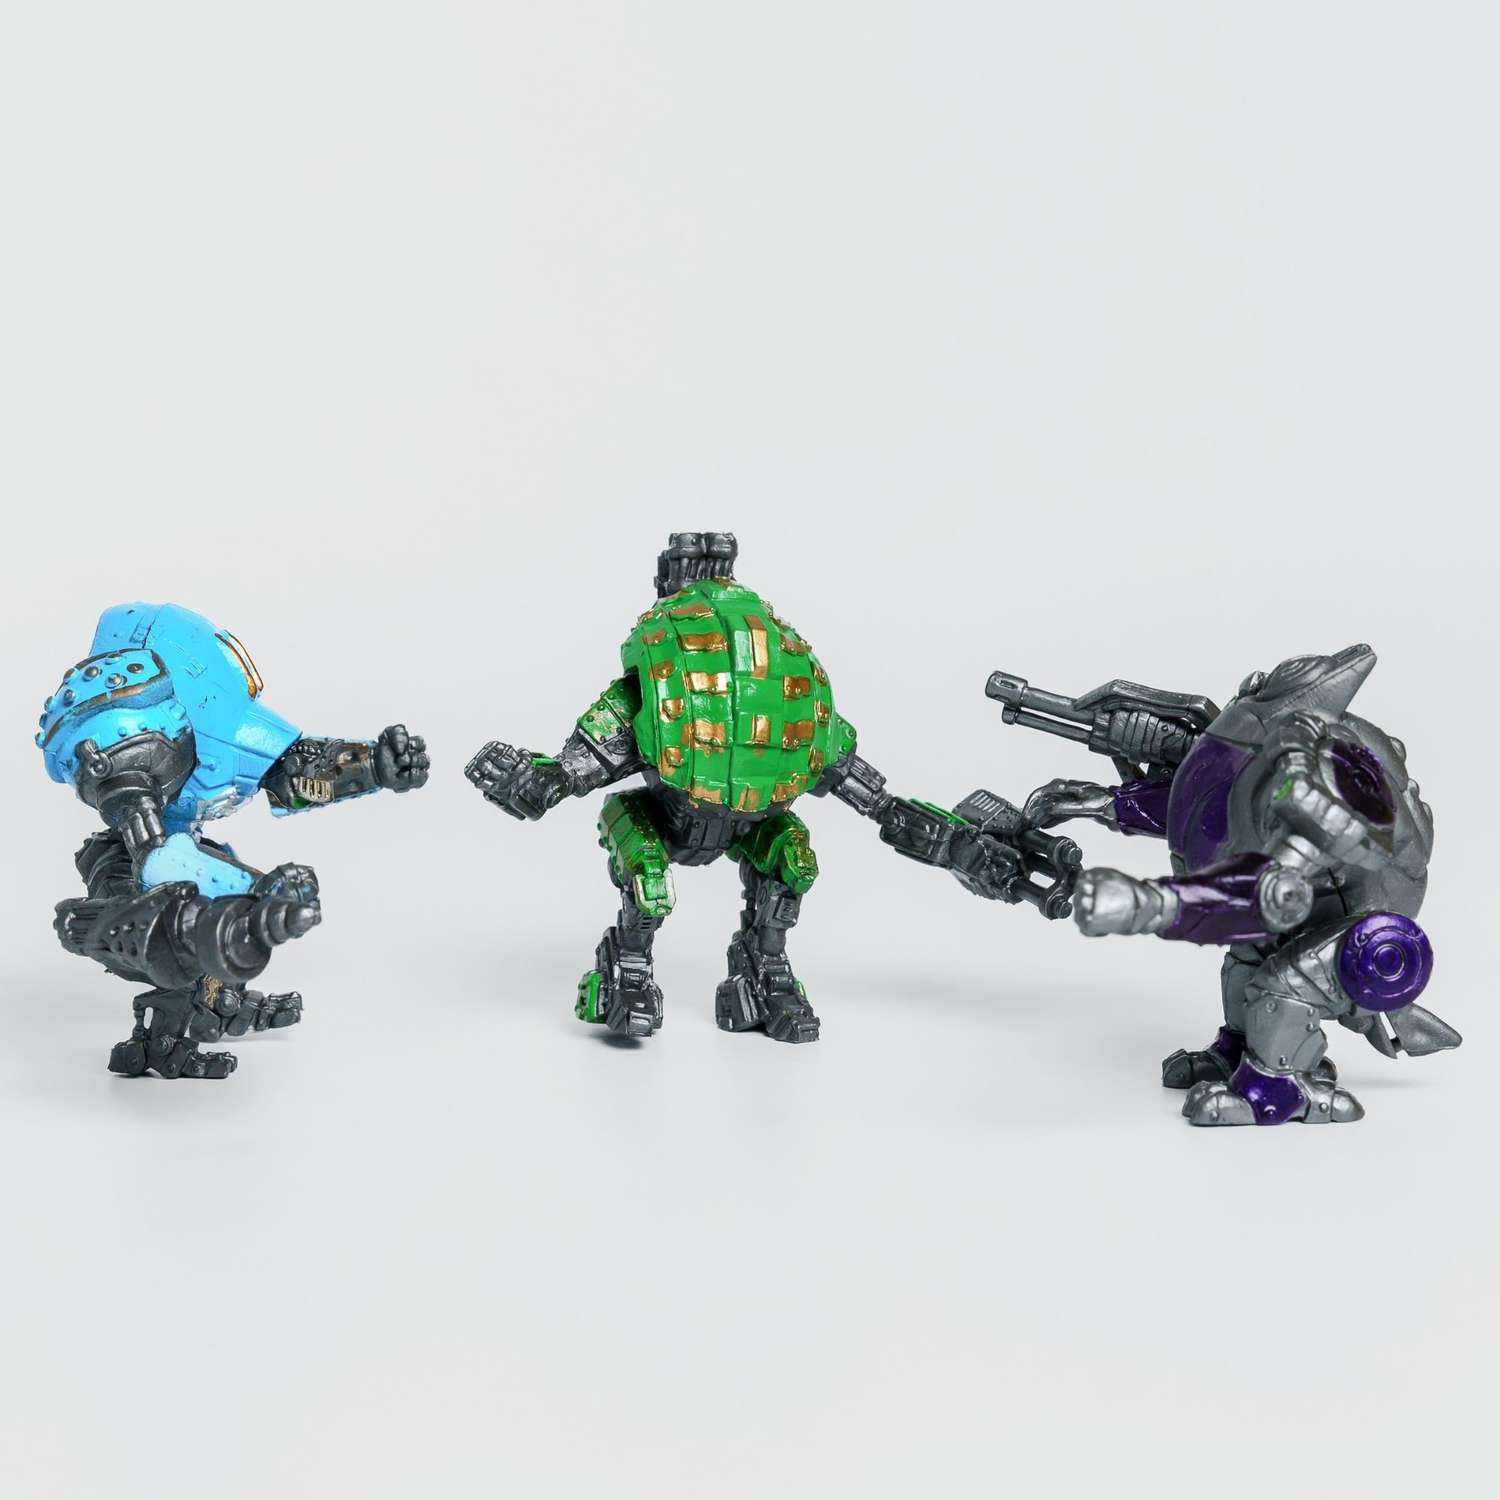 Роботы CyberCode 3 фигурки игрушки для детей развивающие пластиковые коллекционные интересные. 8см - фото 1